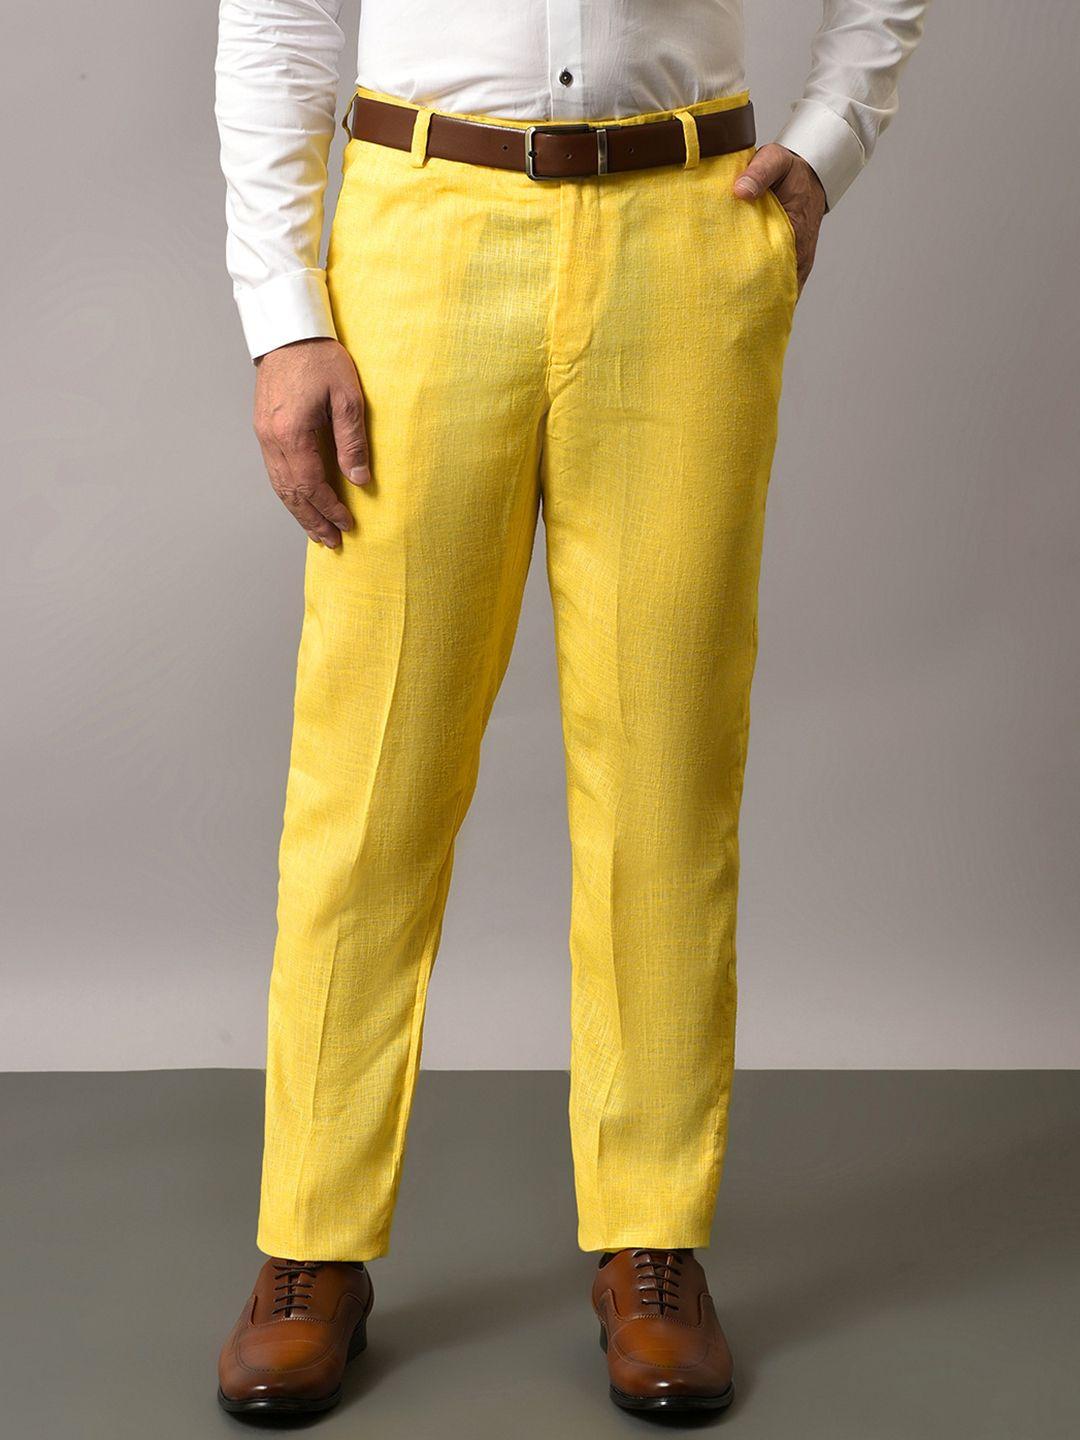 hangup-men-original-regular-fit-mid-rise-formal-trousers